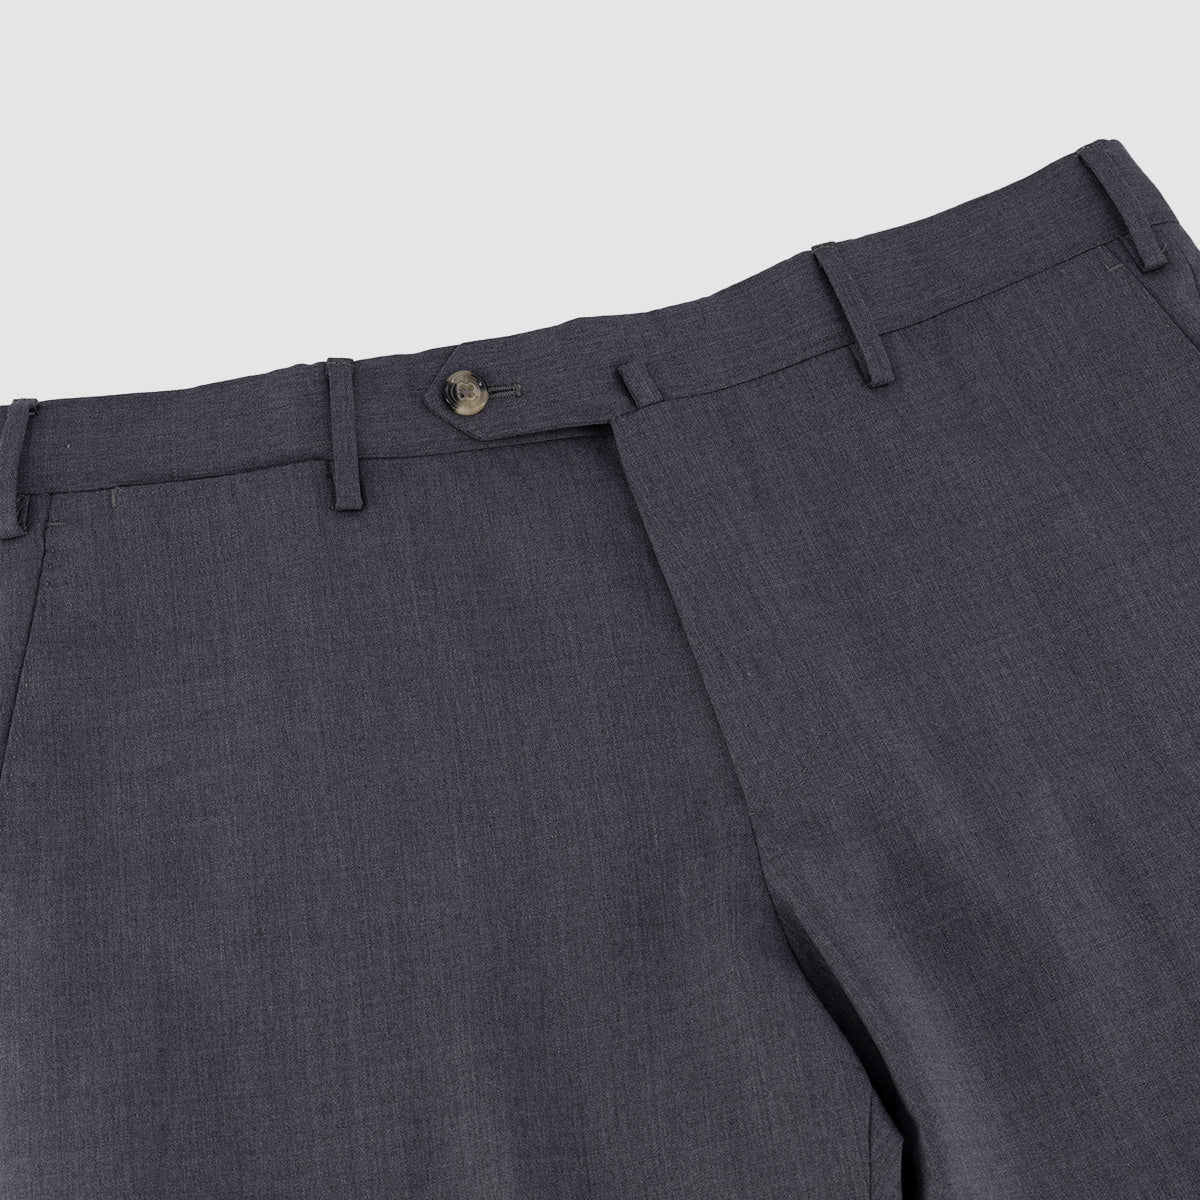 120'S Lux Wool Twill Flat front Modern Trouser - Mid Grey Melange